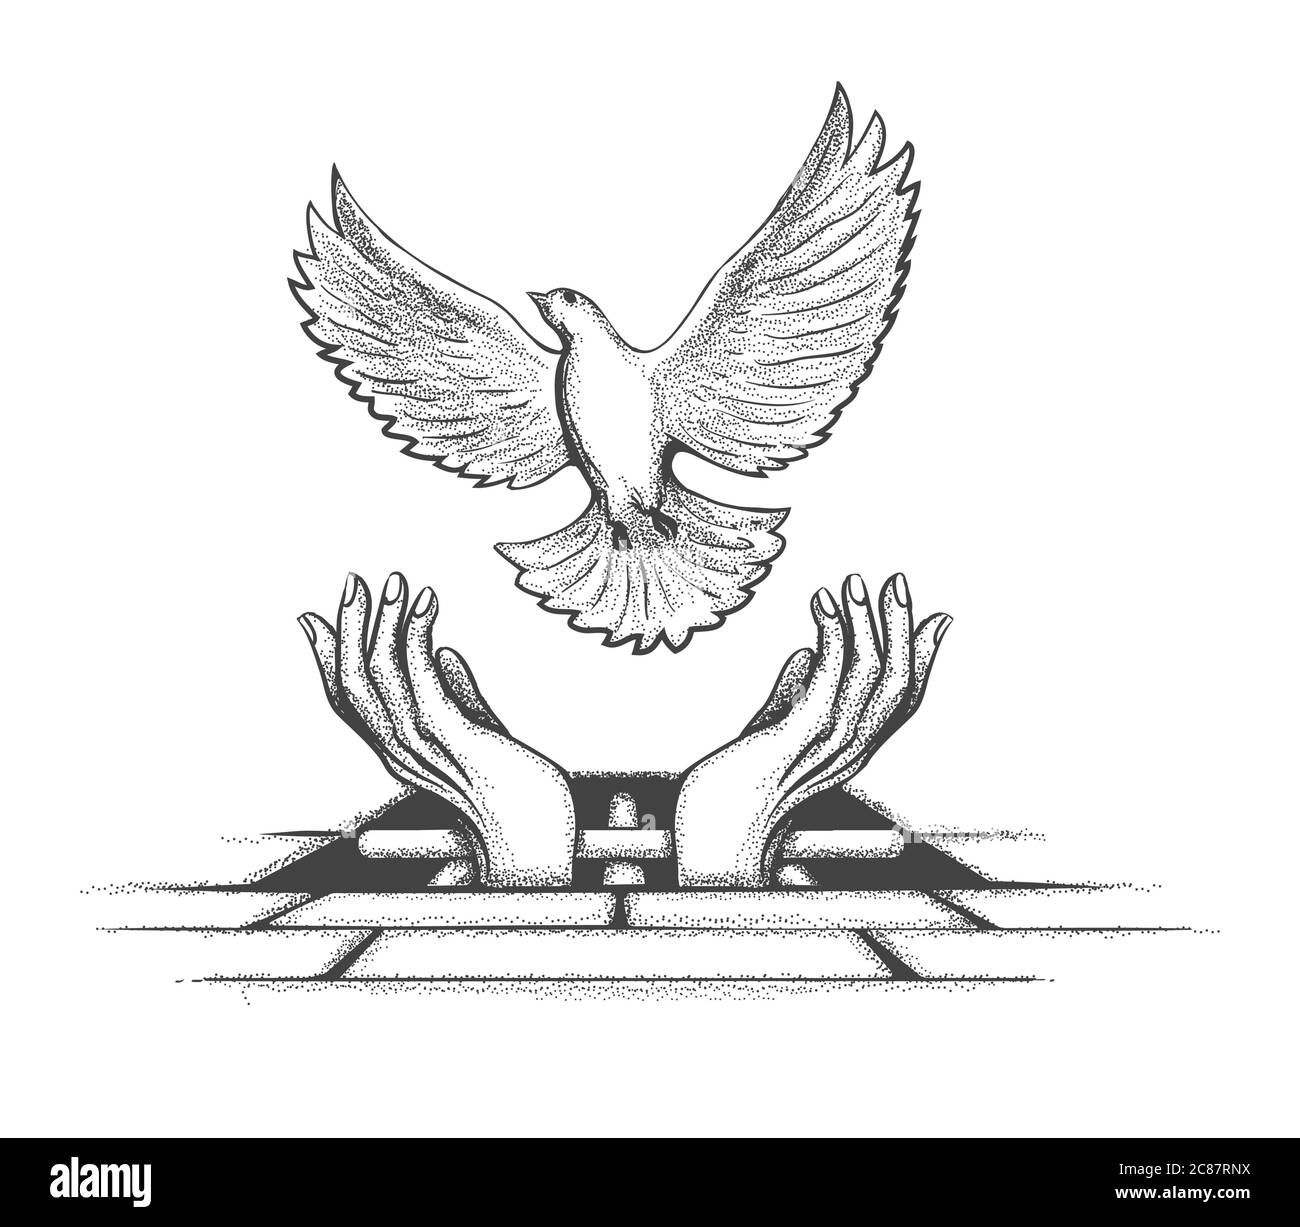 Les prisonniers ont les mains qui ont libéré Dove de prison. Tatouage concept de liberté. Illustration vectorielle. Illustration de Vecteur